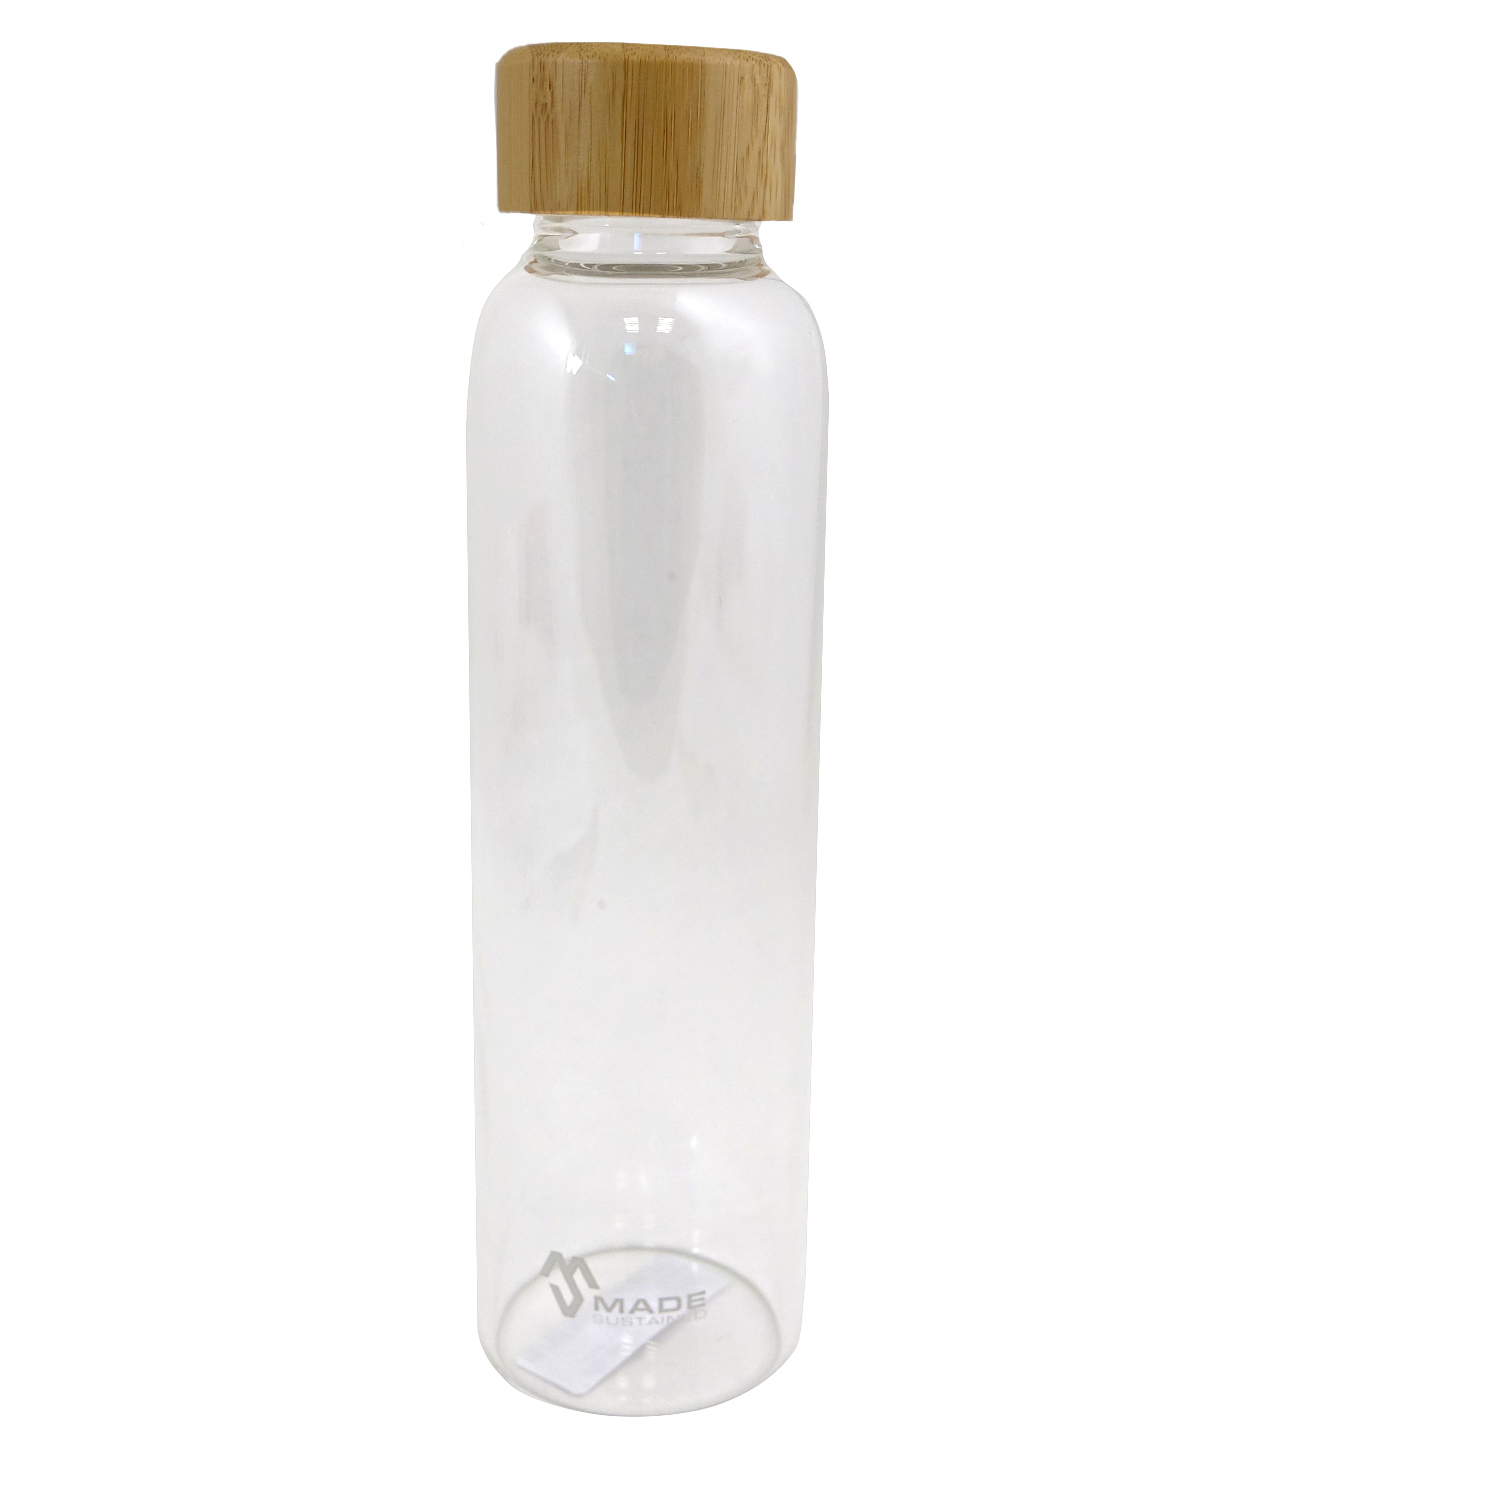 Made Sustained 'Knight' Glasflasche mit Bambusdeckel - 550 ml